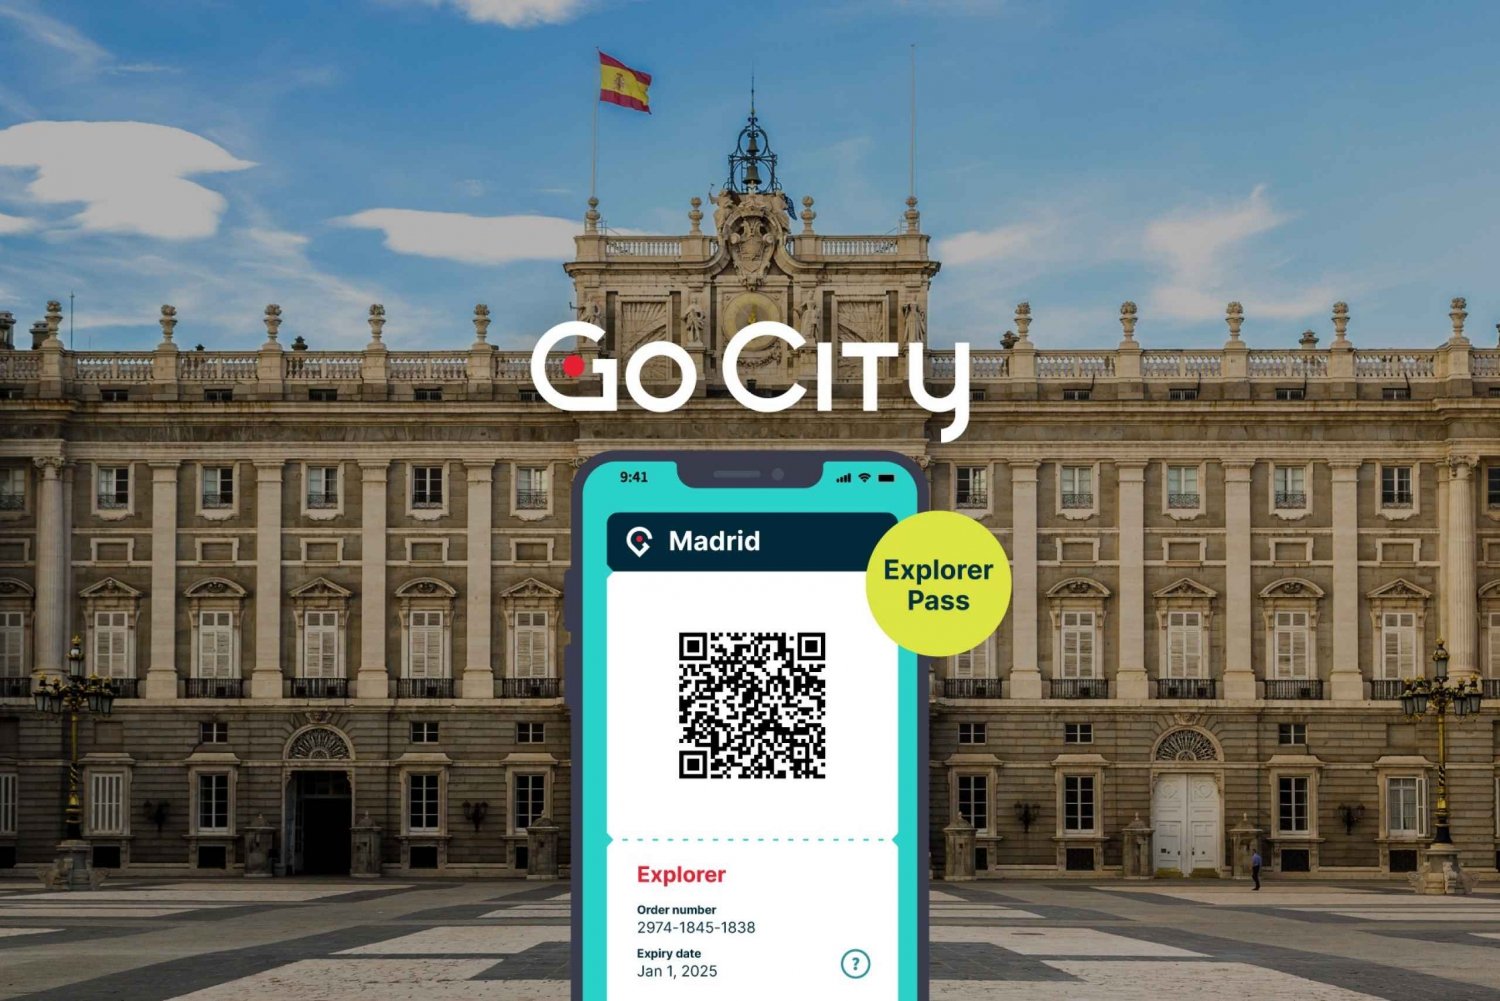 Madryt: Go City Explorer Pass - wybierz od 3 do 7 atrakcji